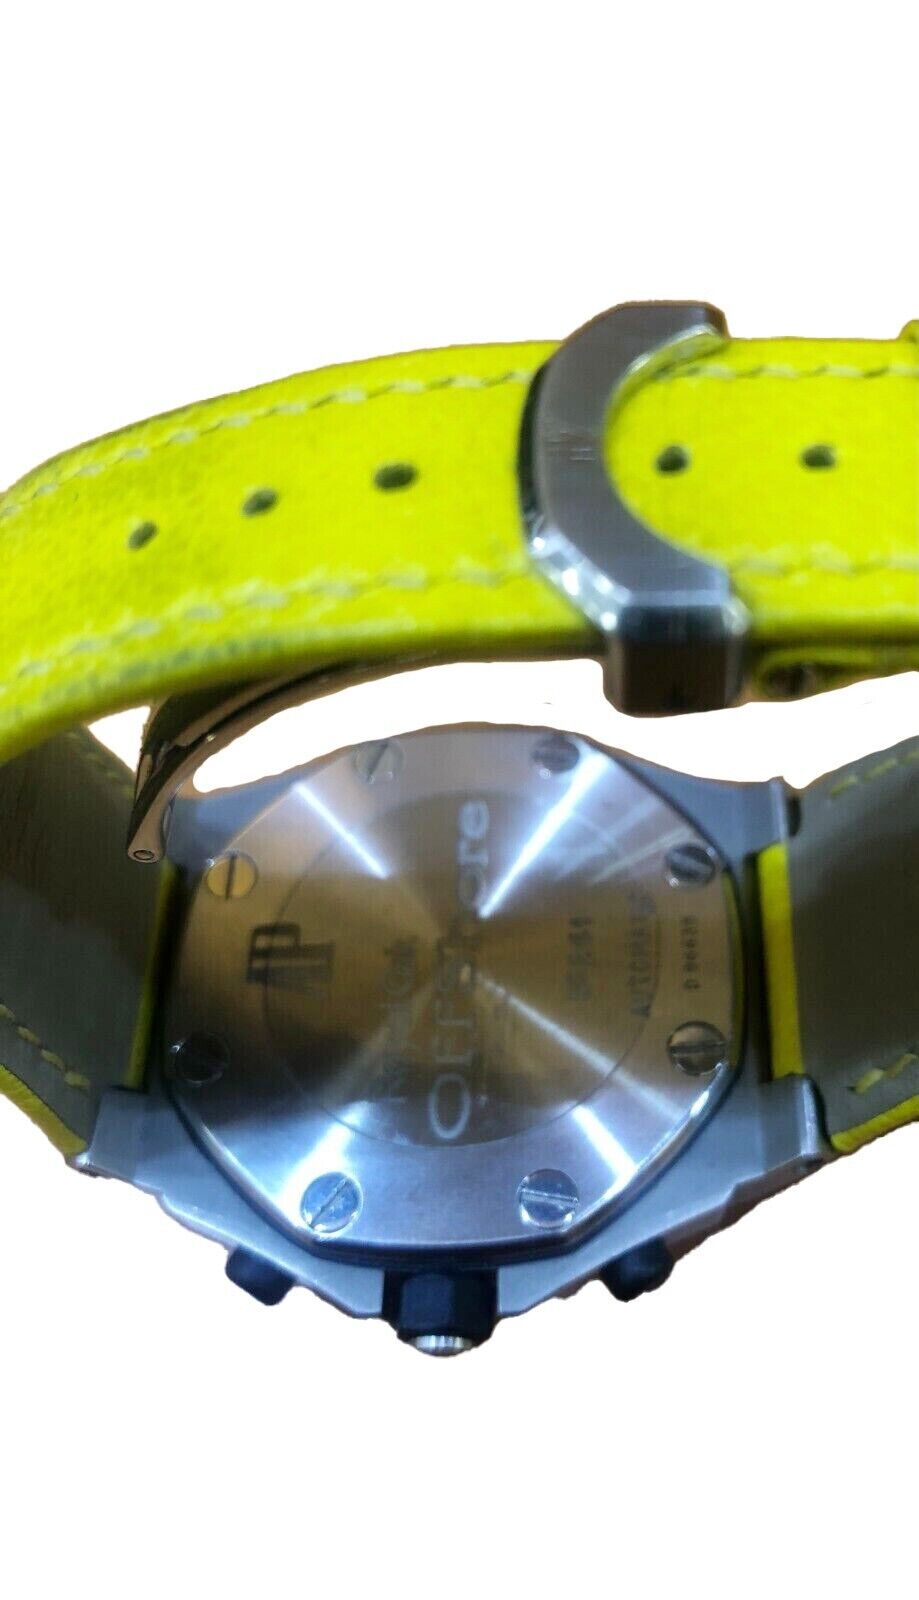 Audemars Piguet Royal Oak Offshore Yellow Men's watch